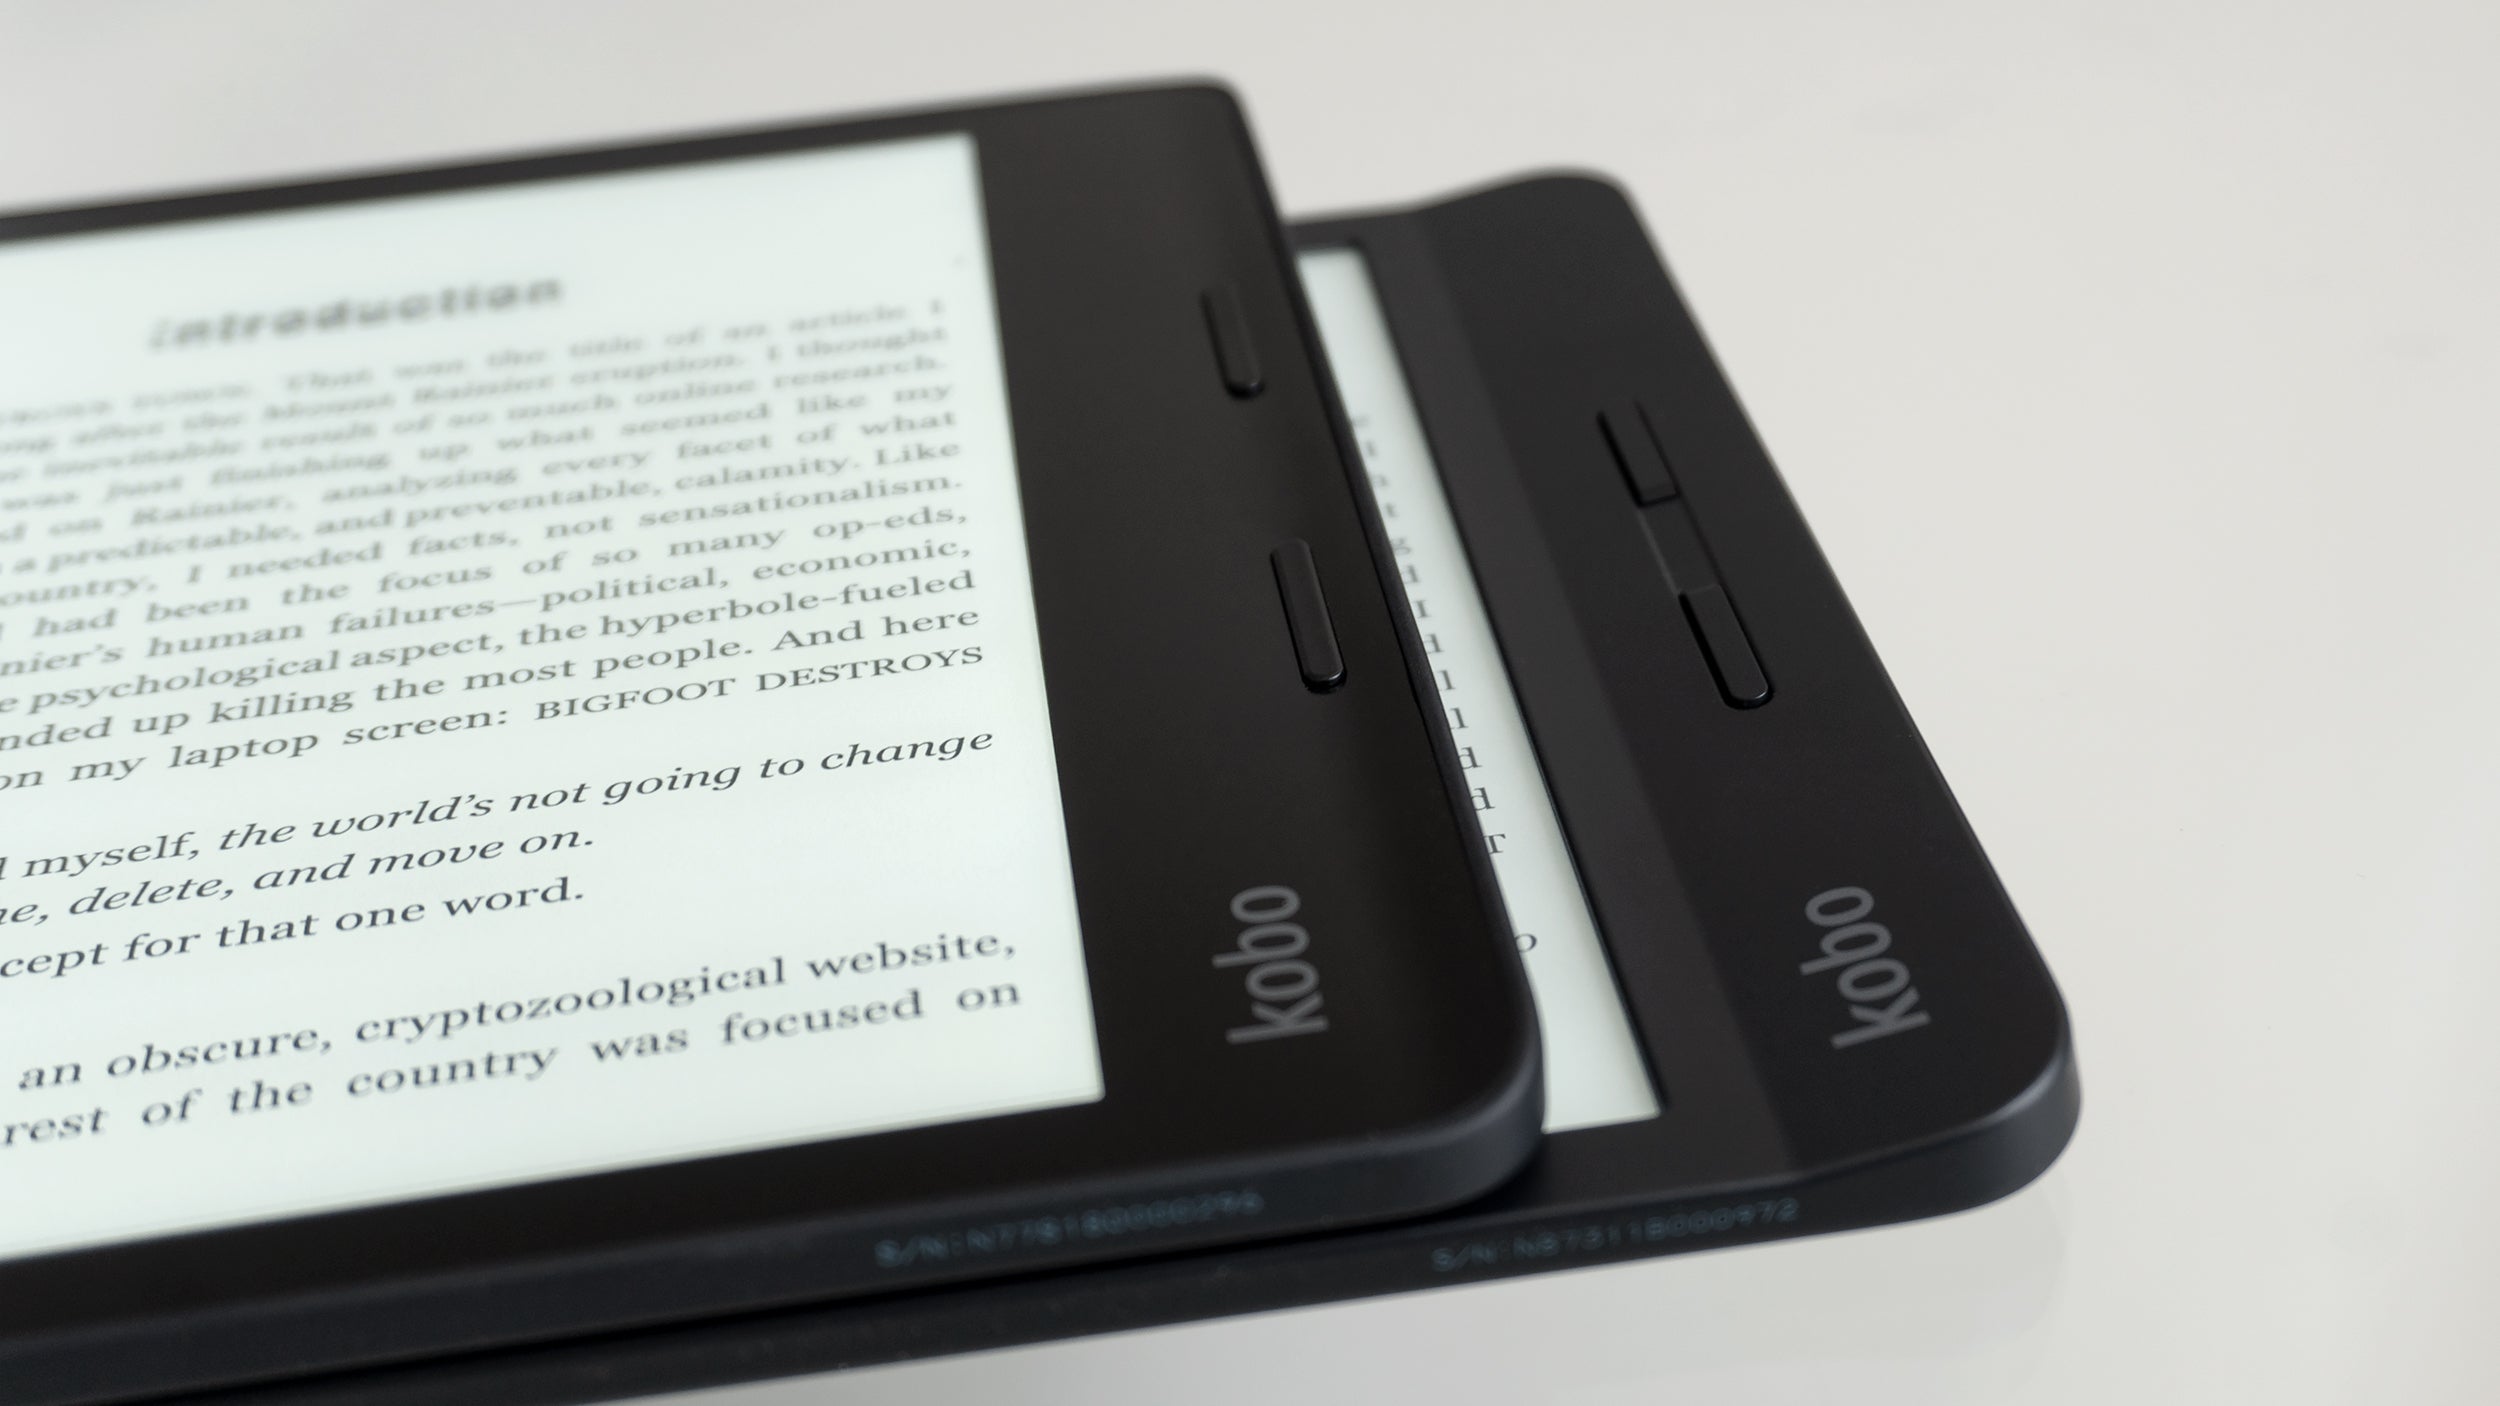 Geek Review: Rakuten Kobo Sage And Libra 2 - Sharper Display